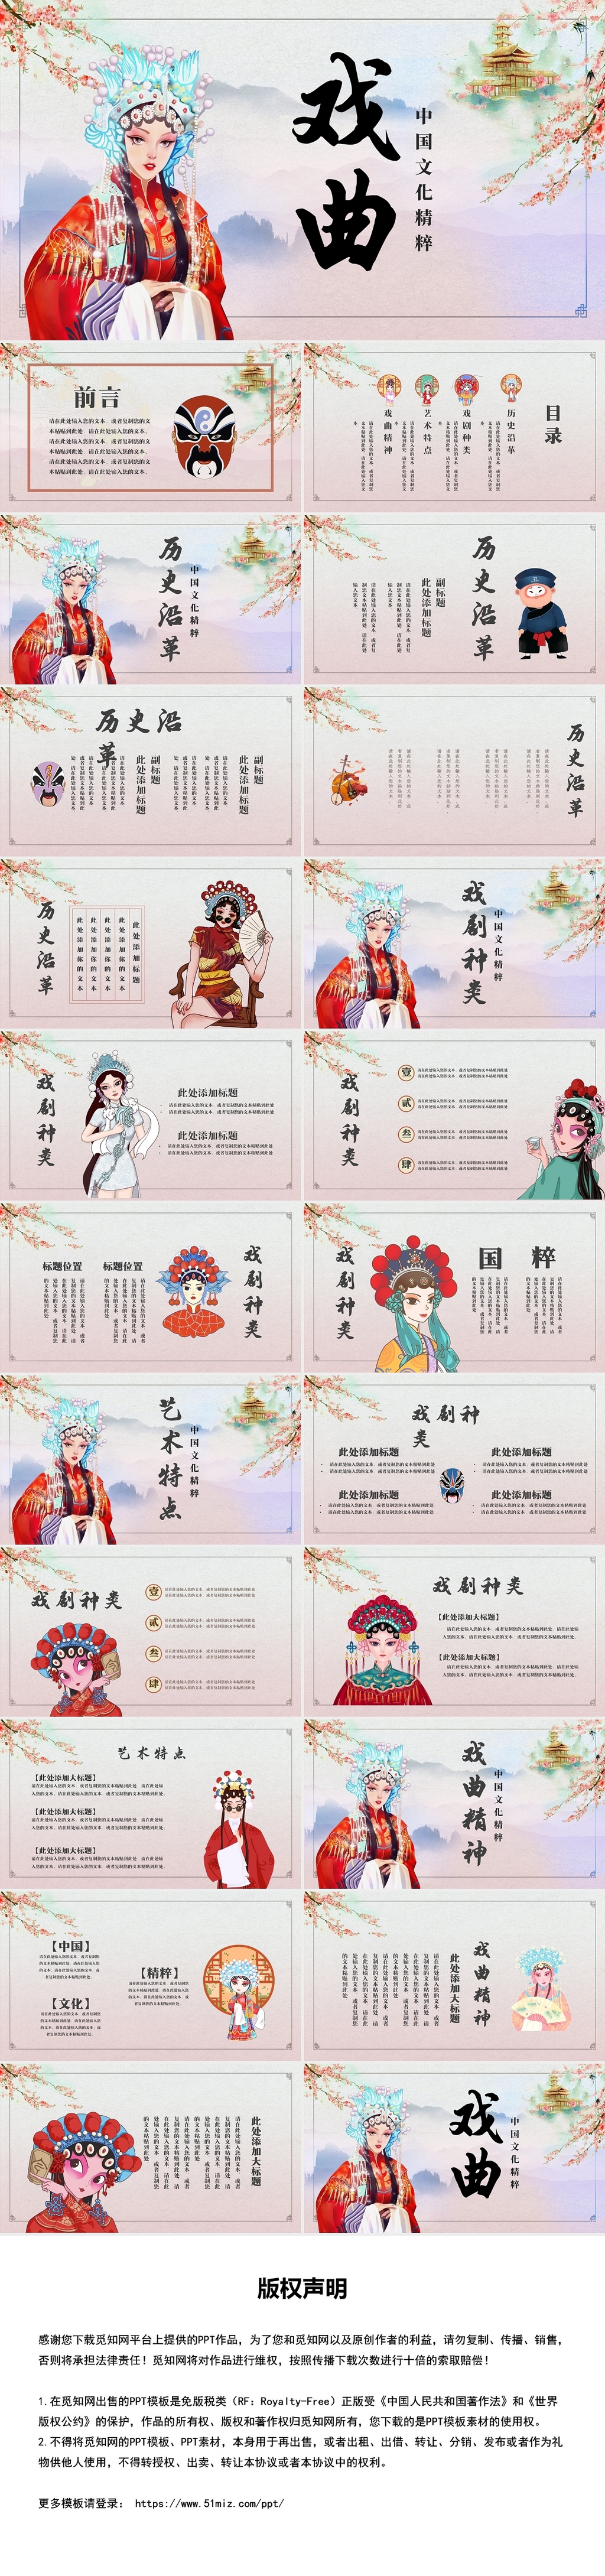 紫色中国风传统戏曲介绍PPT模板国粹京剧戏曲